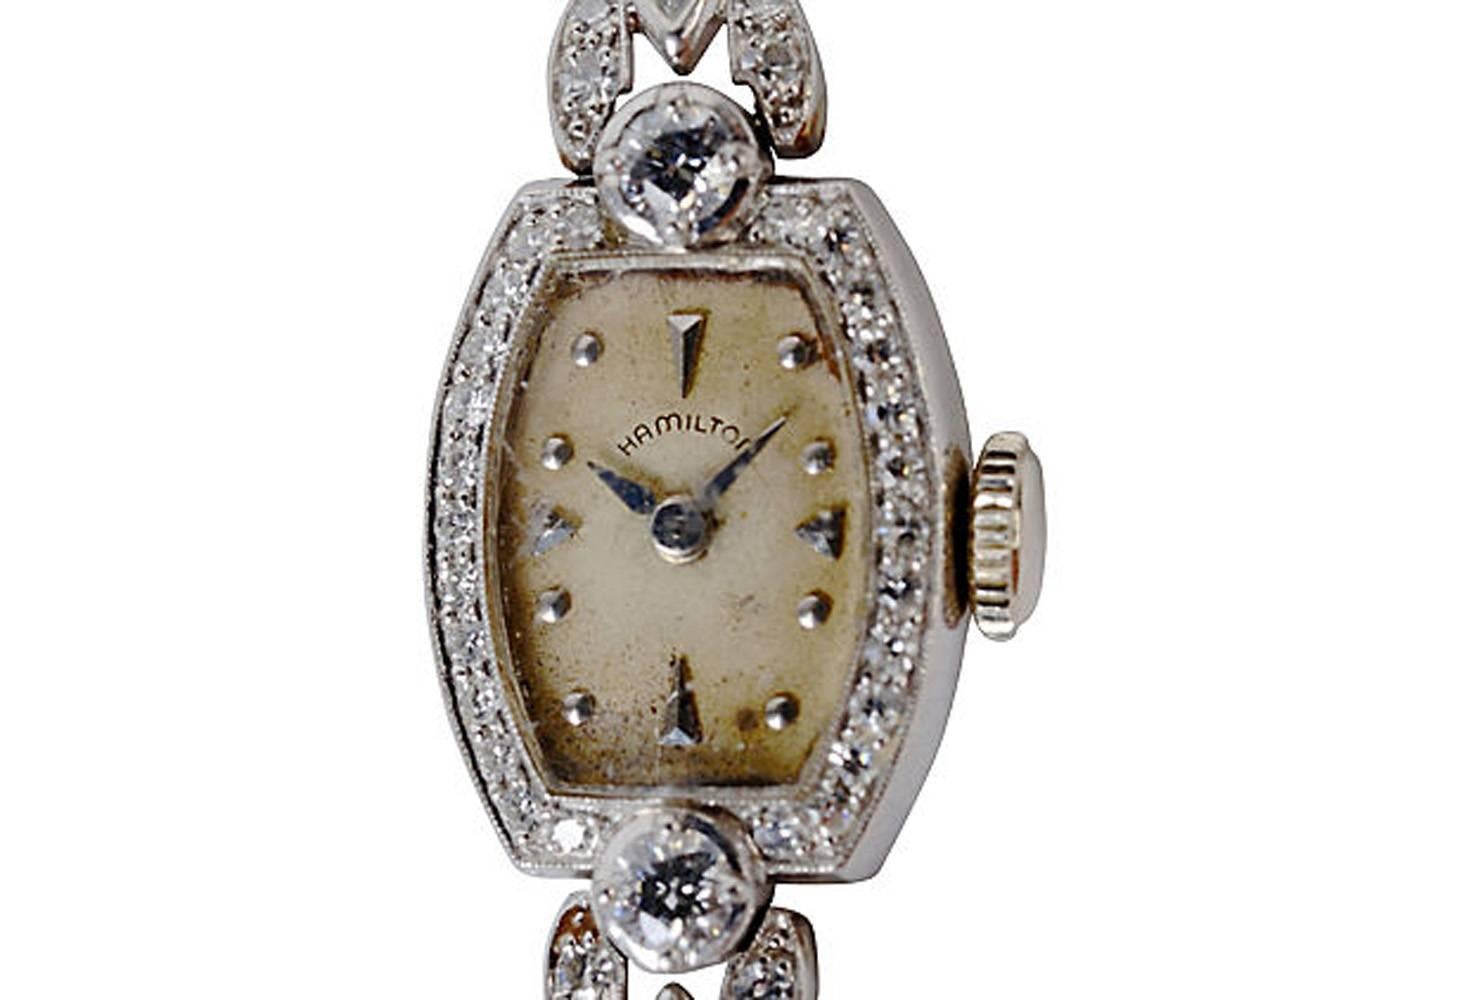 Montre-bracelet Hamilton en platine et diamants pour dames, vers 1950, avec des diamants assortis. Le poids total des diamants est d'environ 1,02 carat. Le mouvement d'origine à 17 rubis est logé dans un boîtier décoré au tour. Ancre de sécurité à